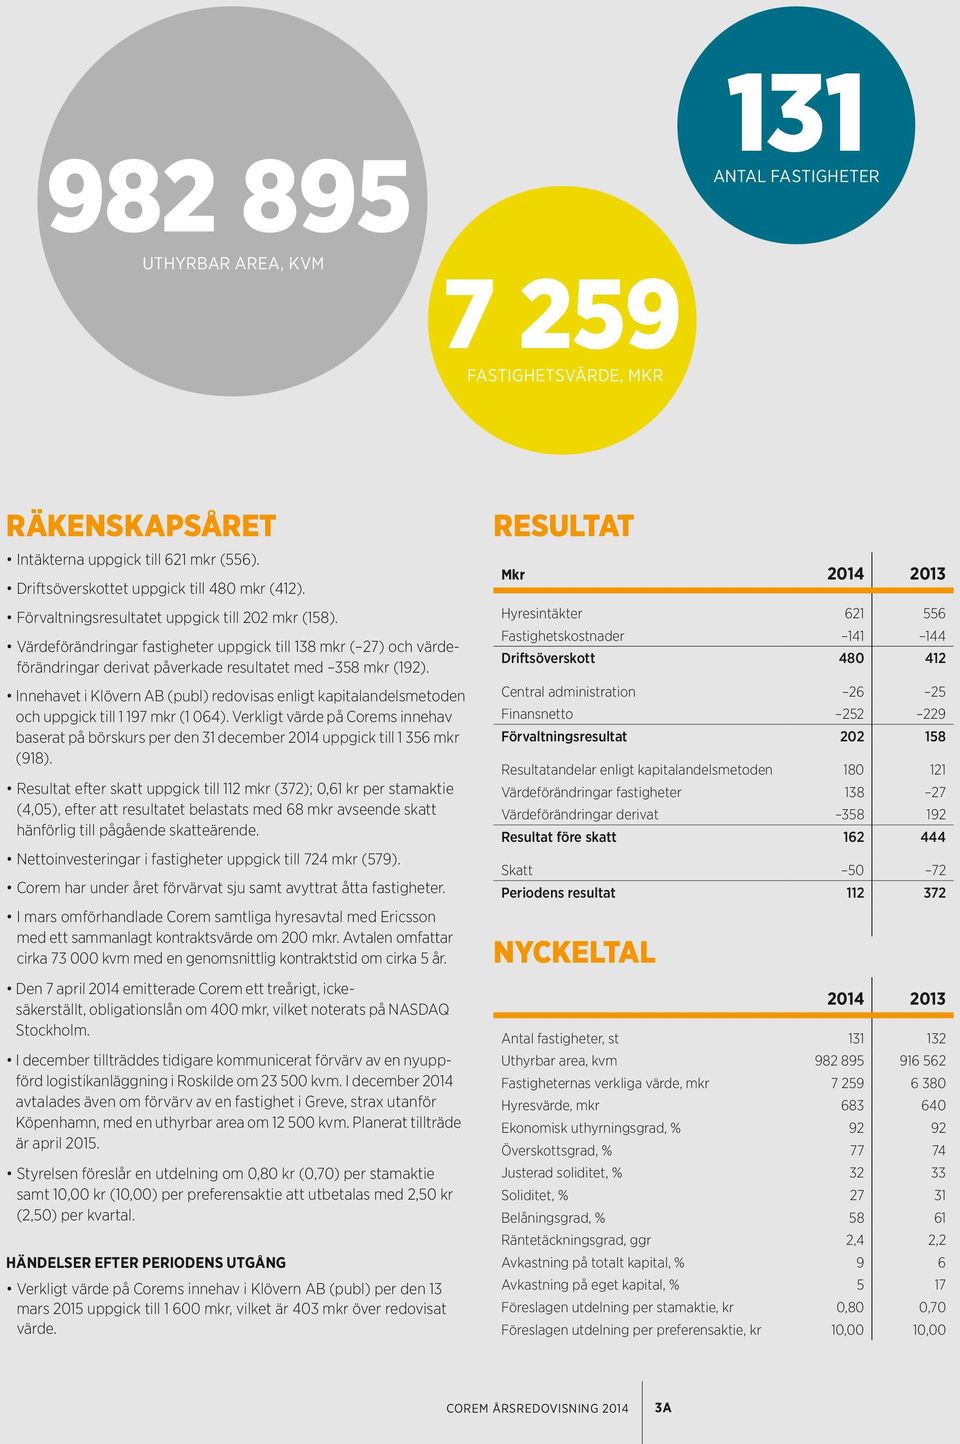 Innehavet i Klövern AB (publ) redovisas enligt kapitalandelsmetoden och uppgick till 1 197 mkr (1 064).